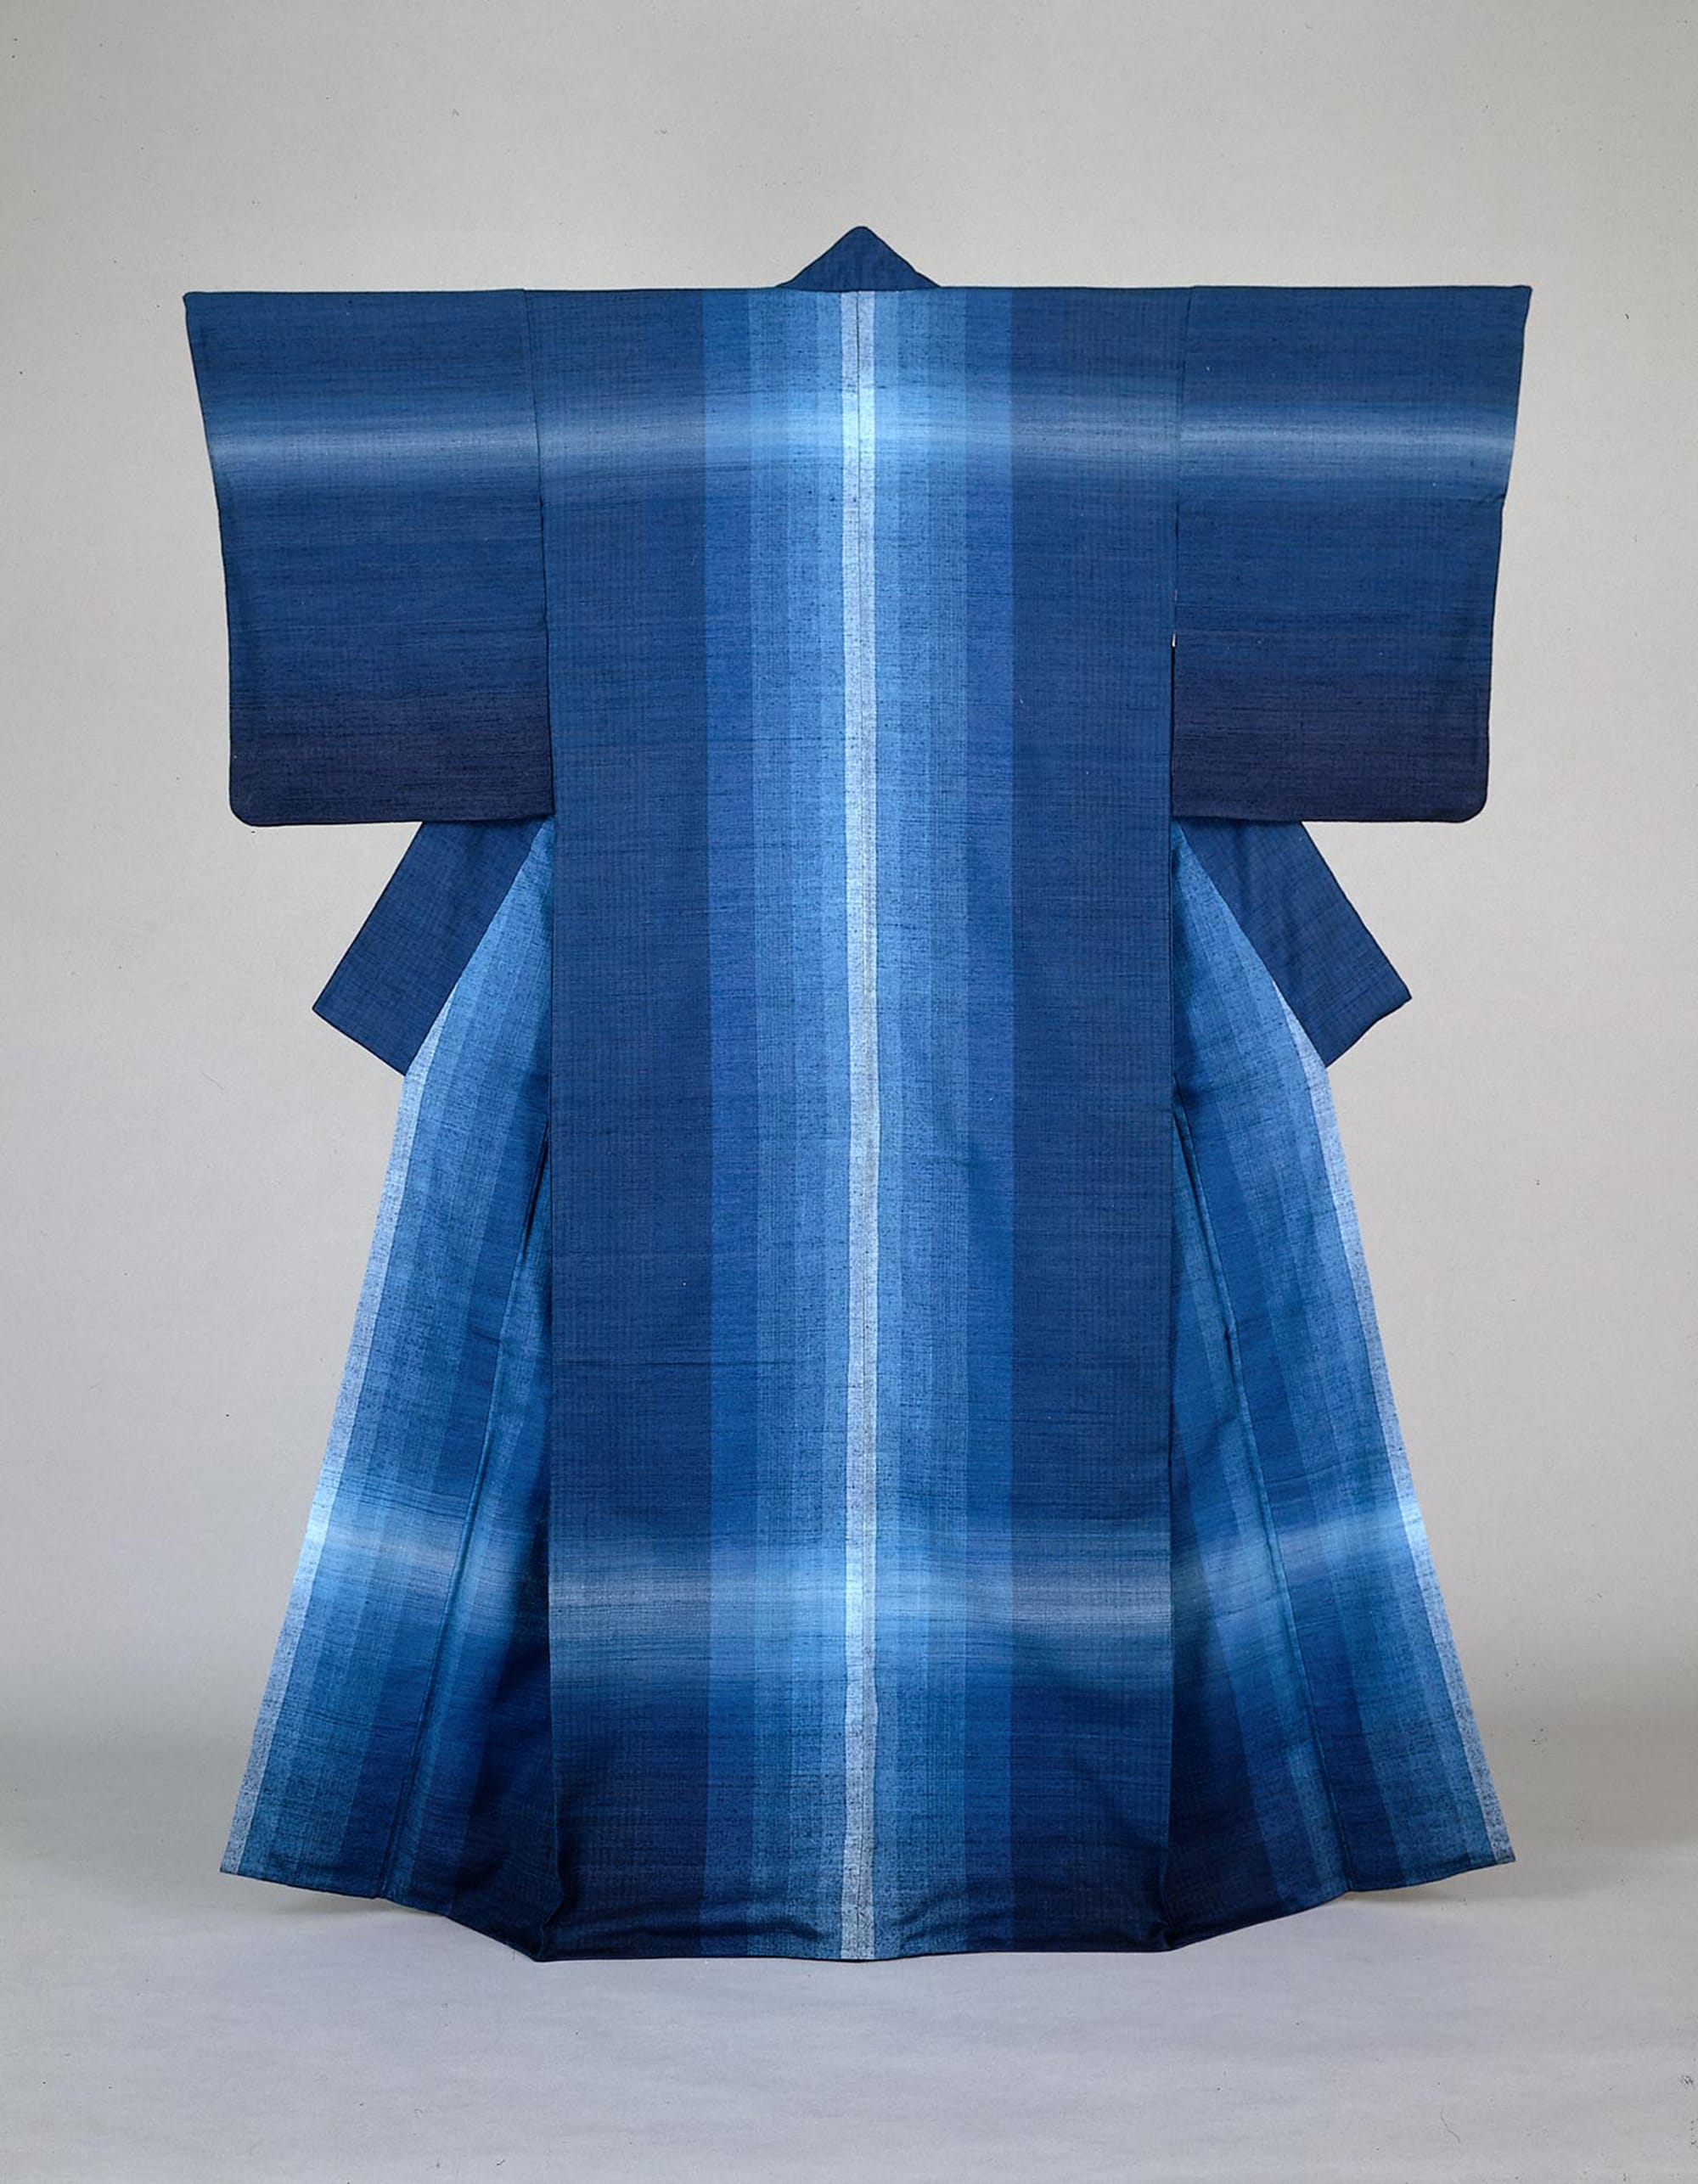 志村ふくみ《紬織着物 水瑠璃》1976年 自然が織りなす藍の青の深さと広がりにはどこか懐かしさを覚える。